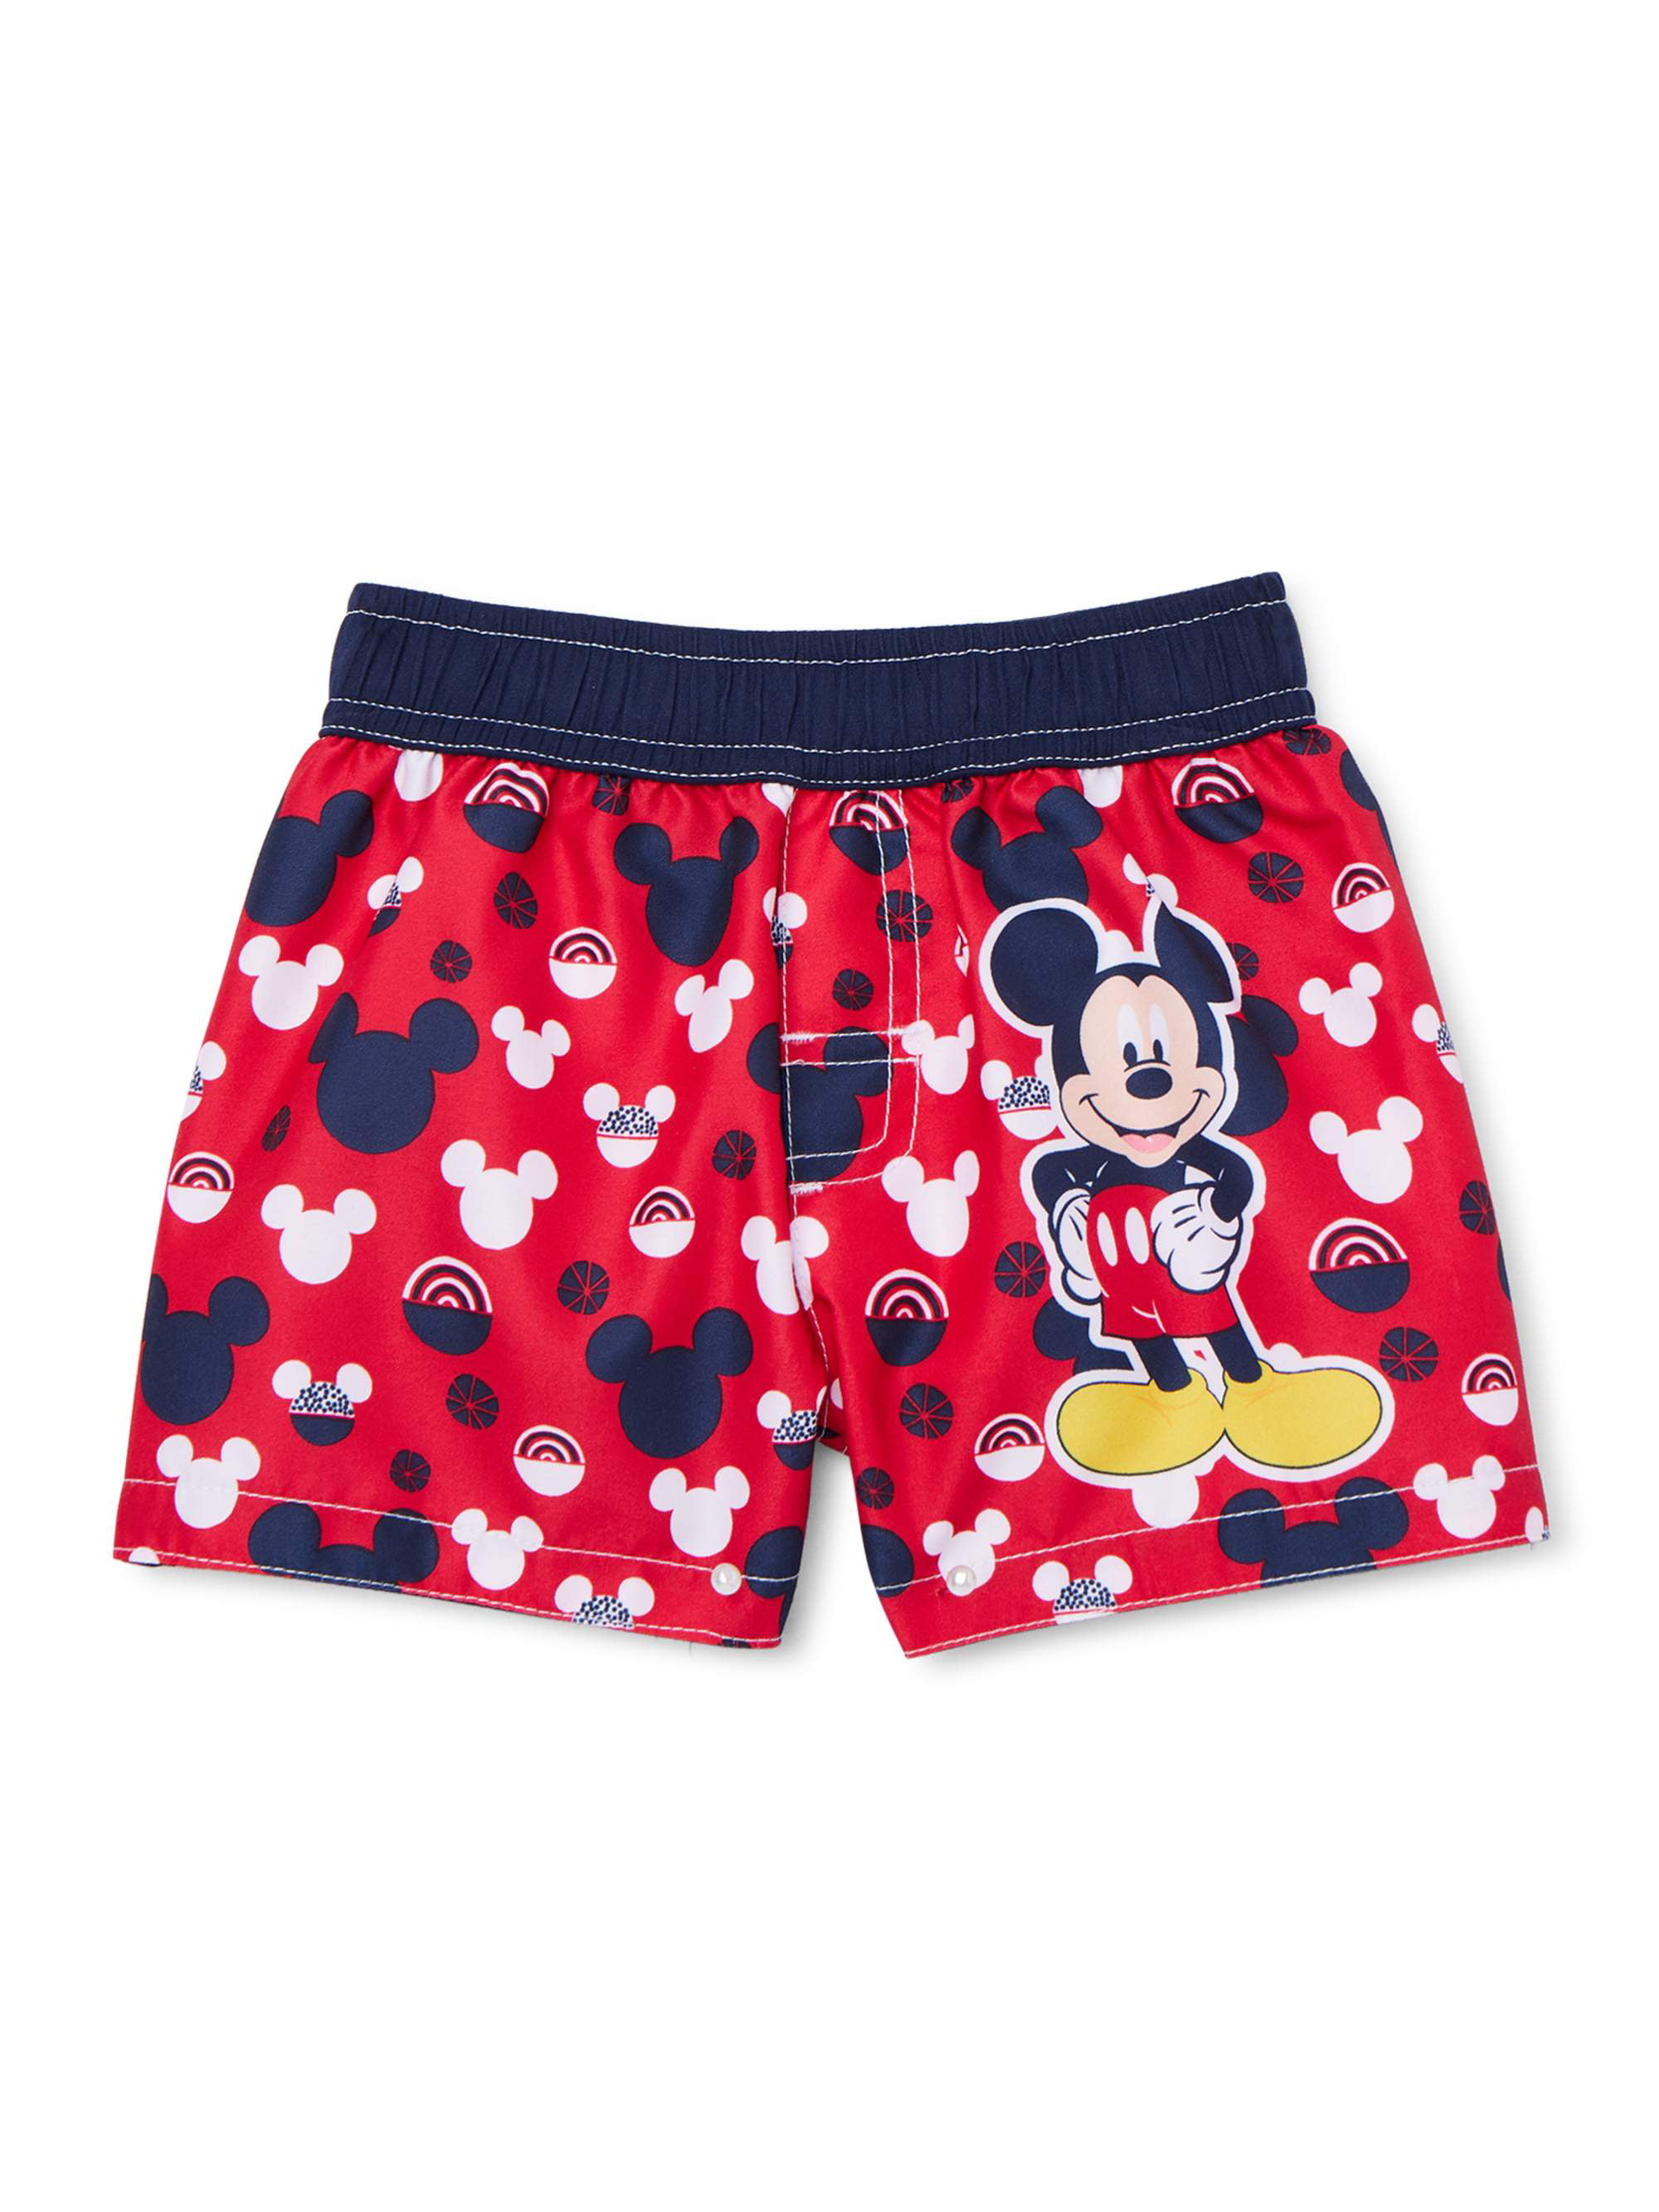 Mickey Mouse Baby Boy Swim Trunks - Walmart.com